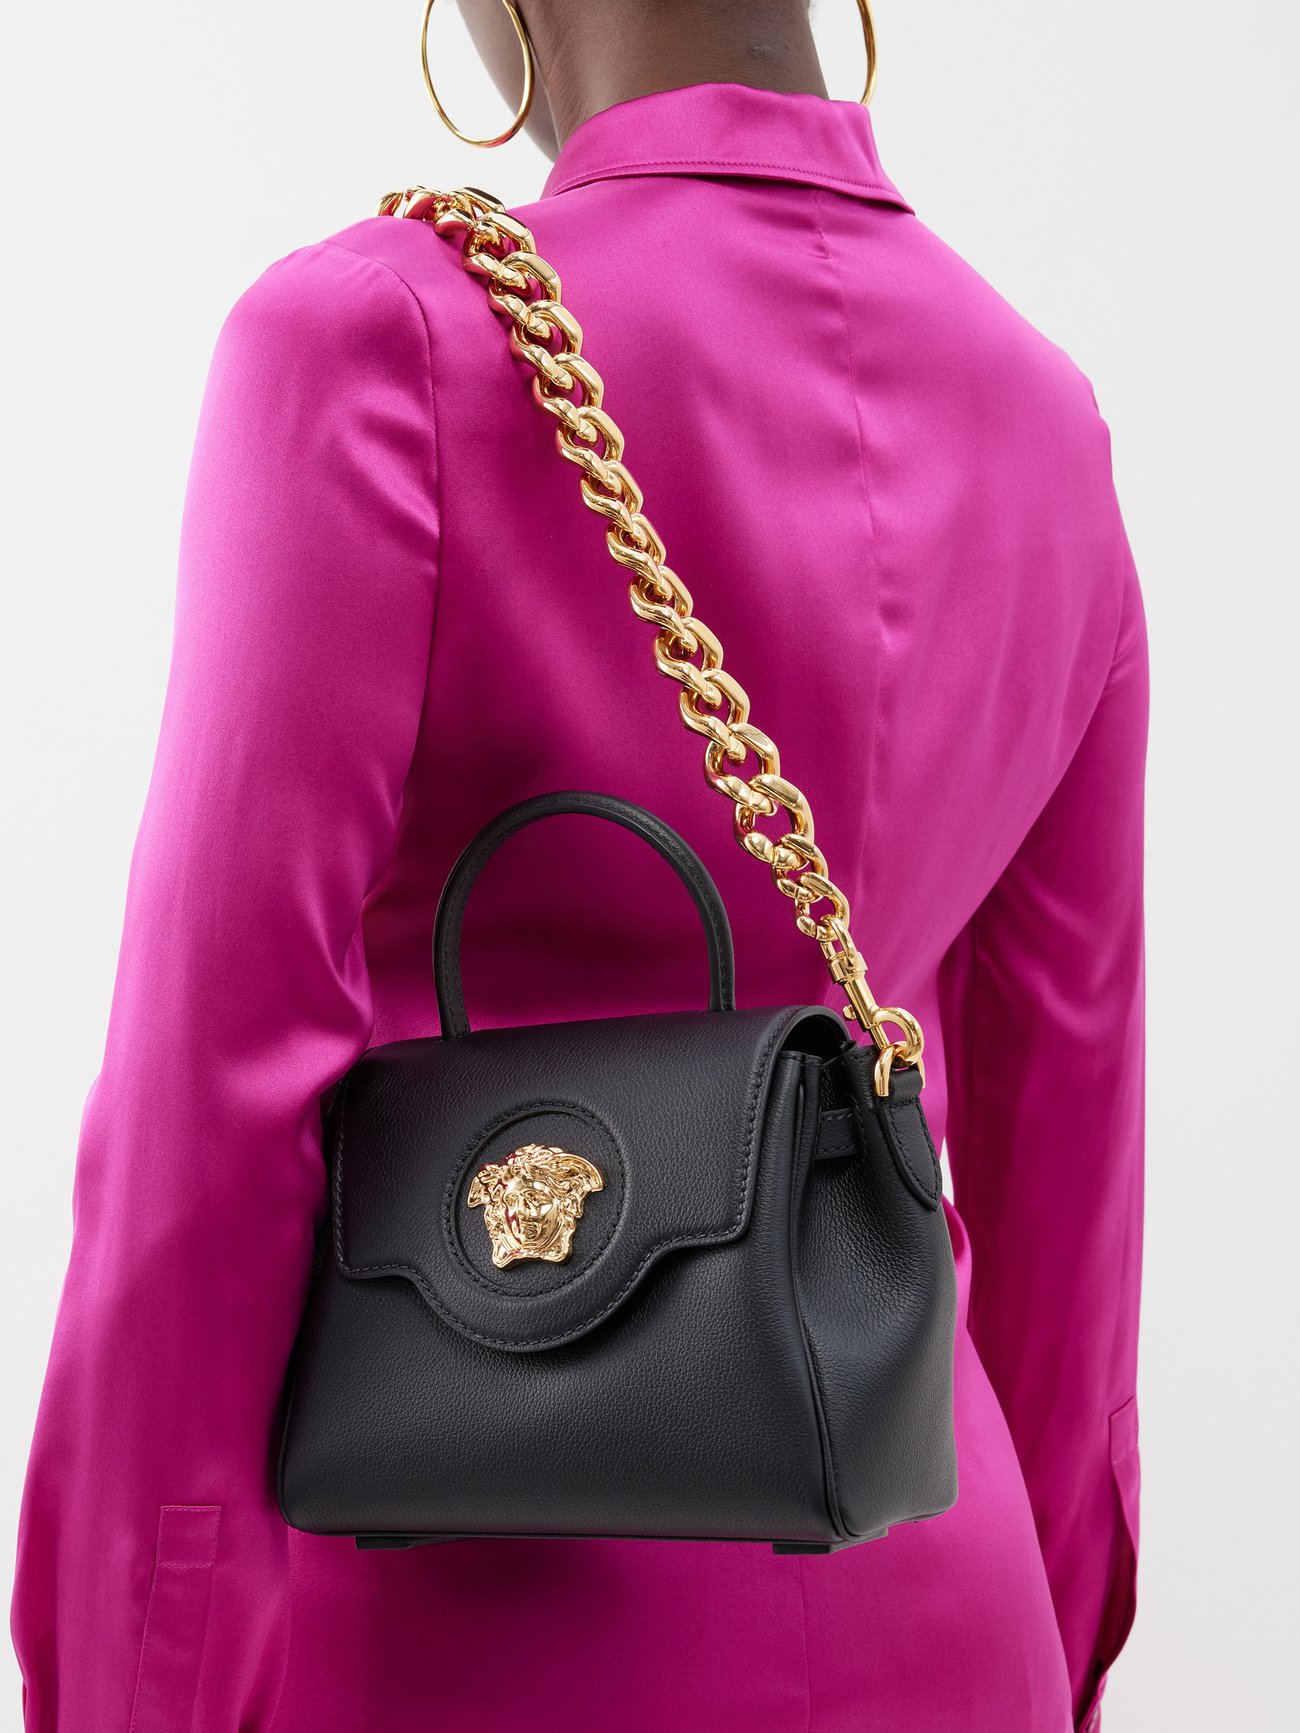 Versace | La Medusa Small Leather Handbag | Black Tu